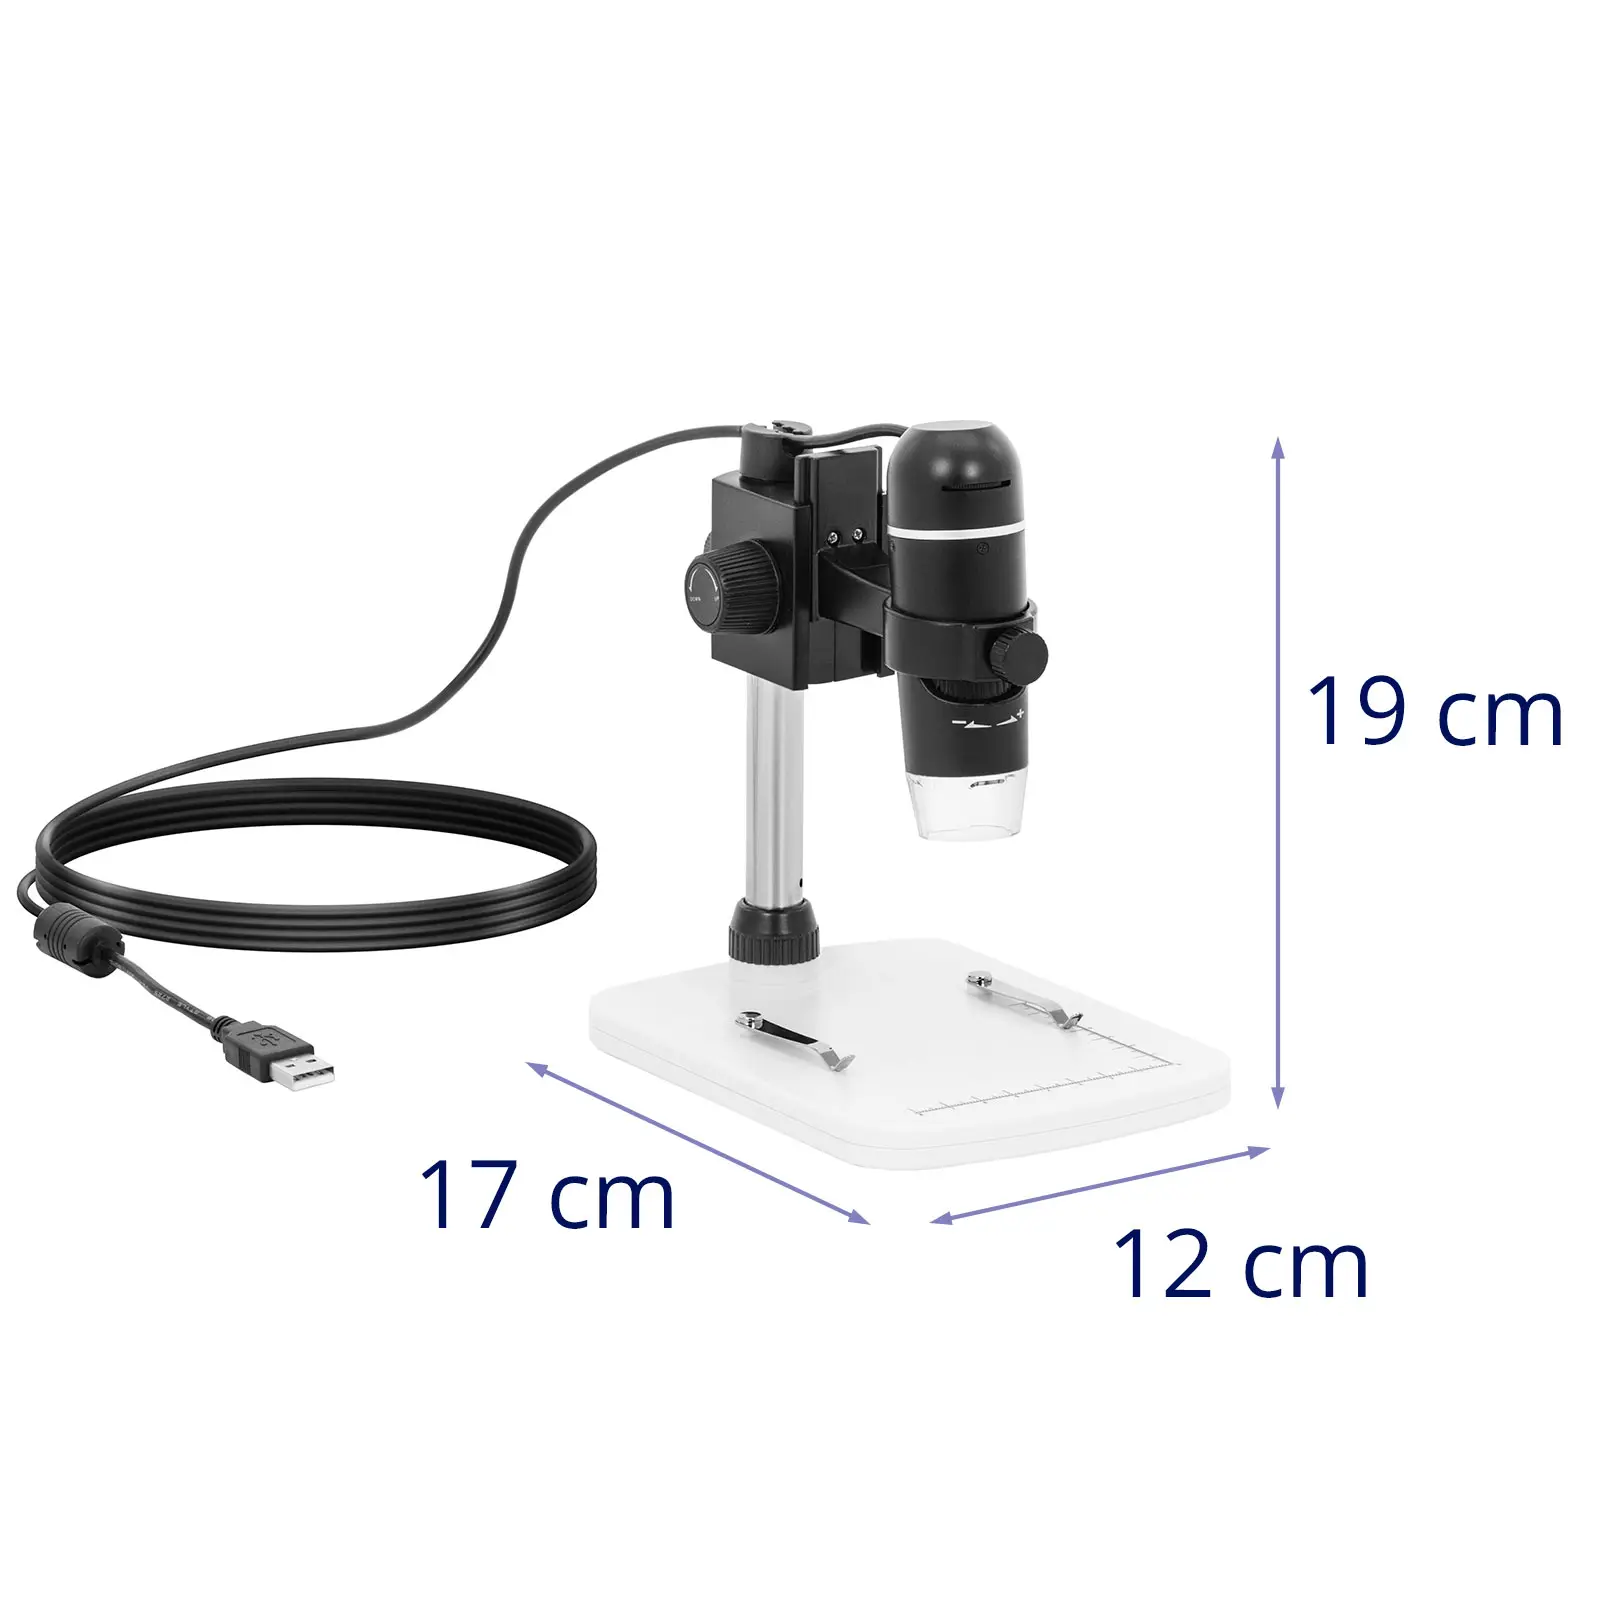 Skaitmeninis mikroskopas - 10 - 300x - LED apšvietimas - USB